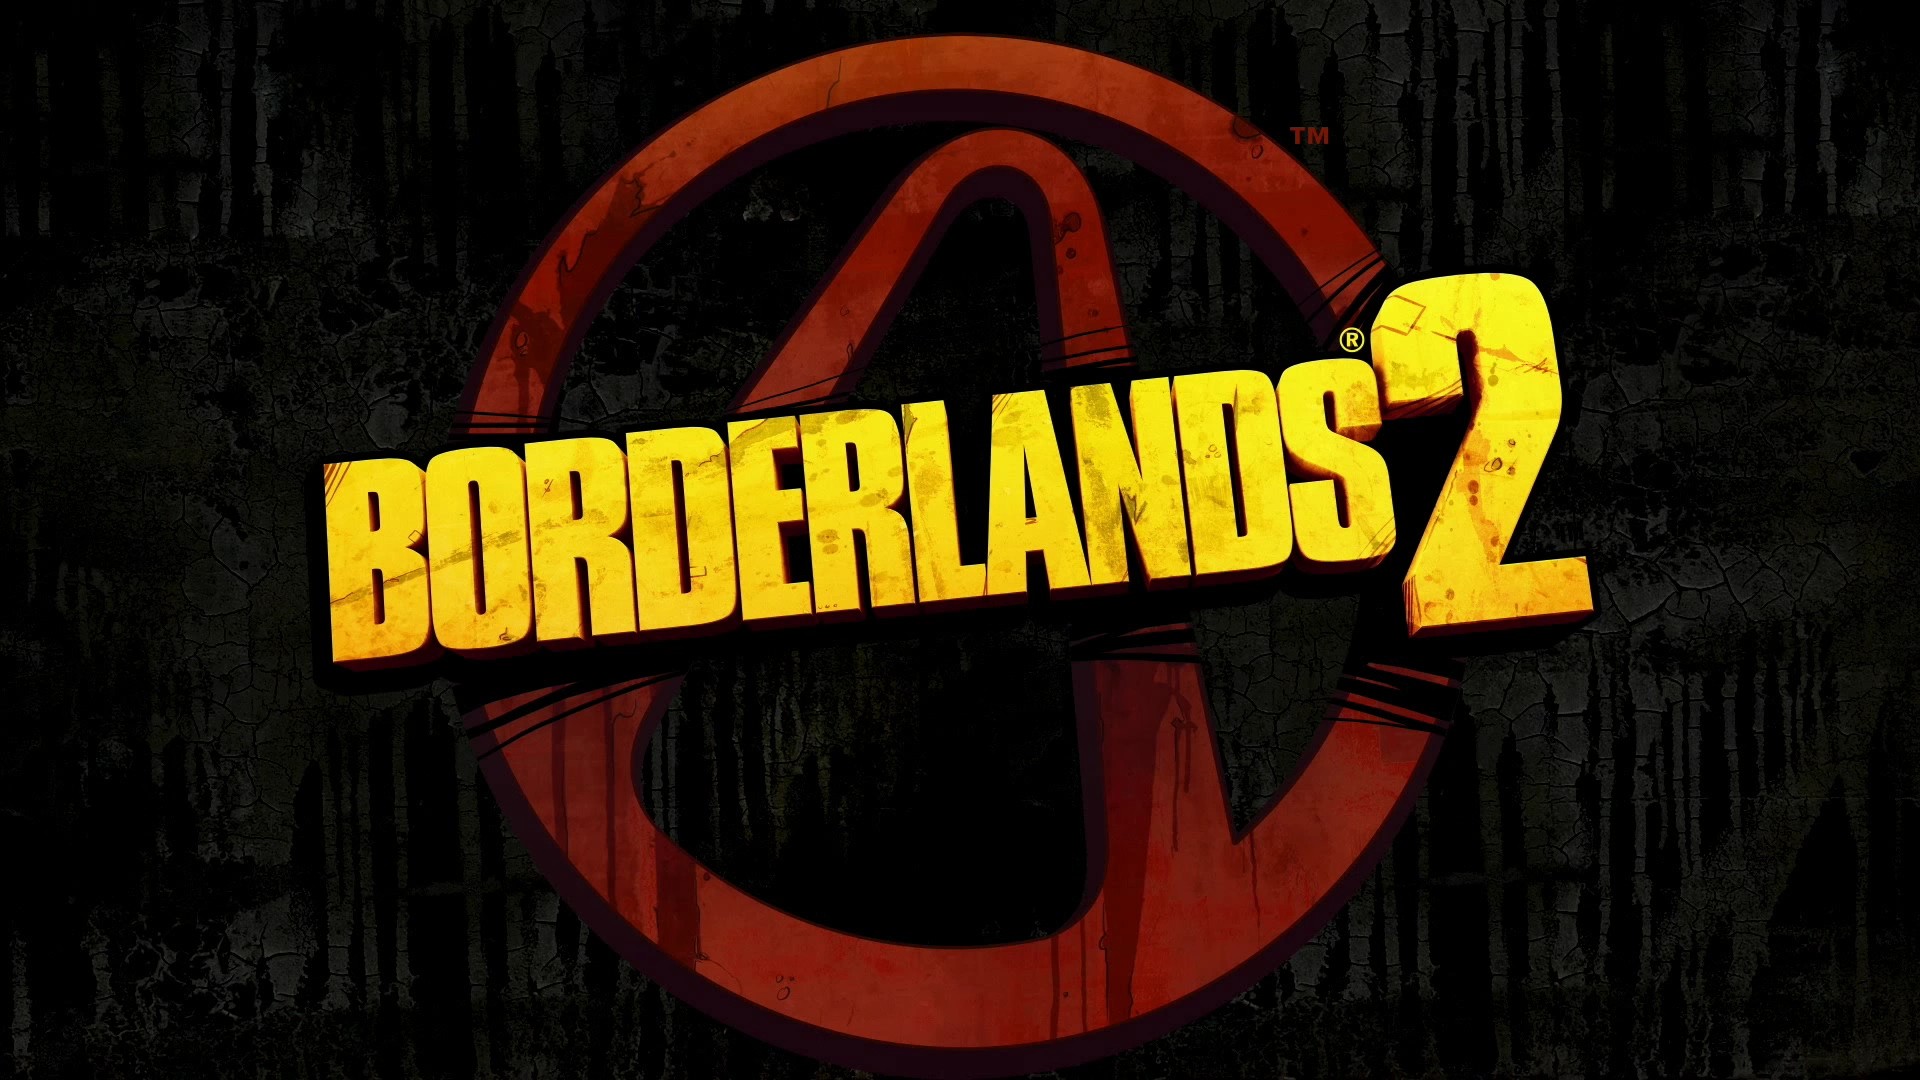 logos, Borderlands 2 - desktop wallpaper